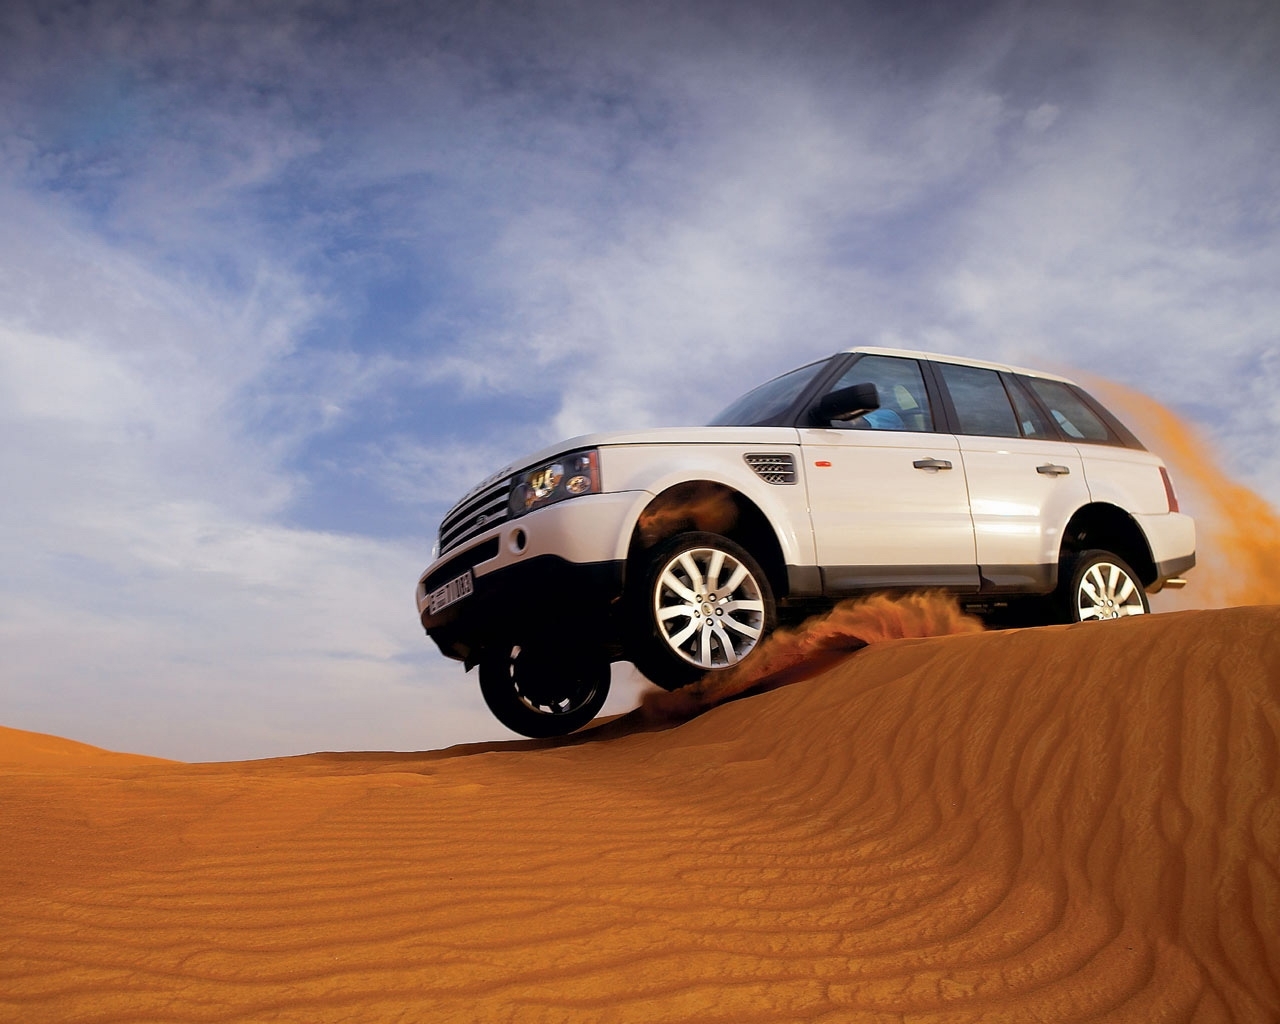 Скачать картинку Транспорт, Машины, Ленд Ровер (Land Rover) в телефон бесплатно.